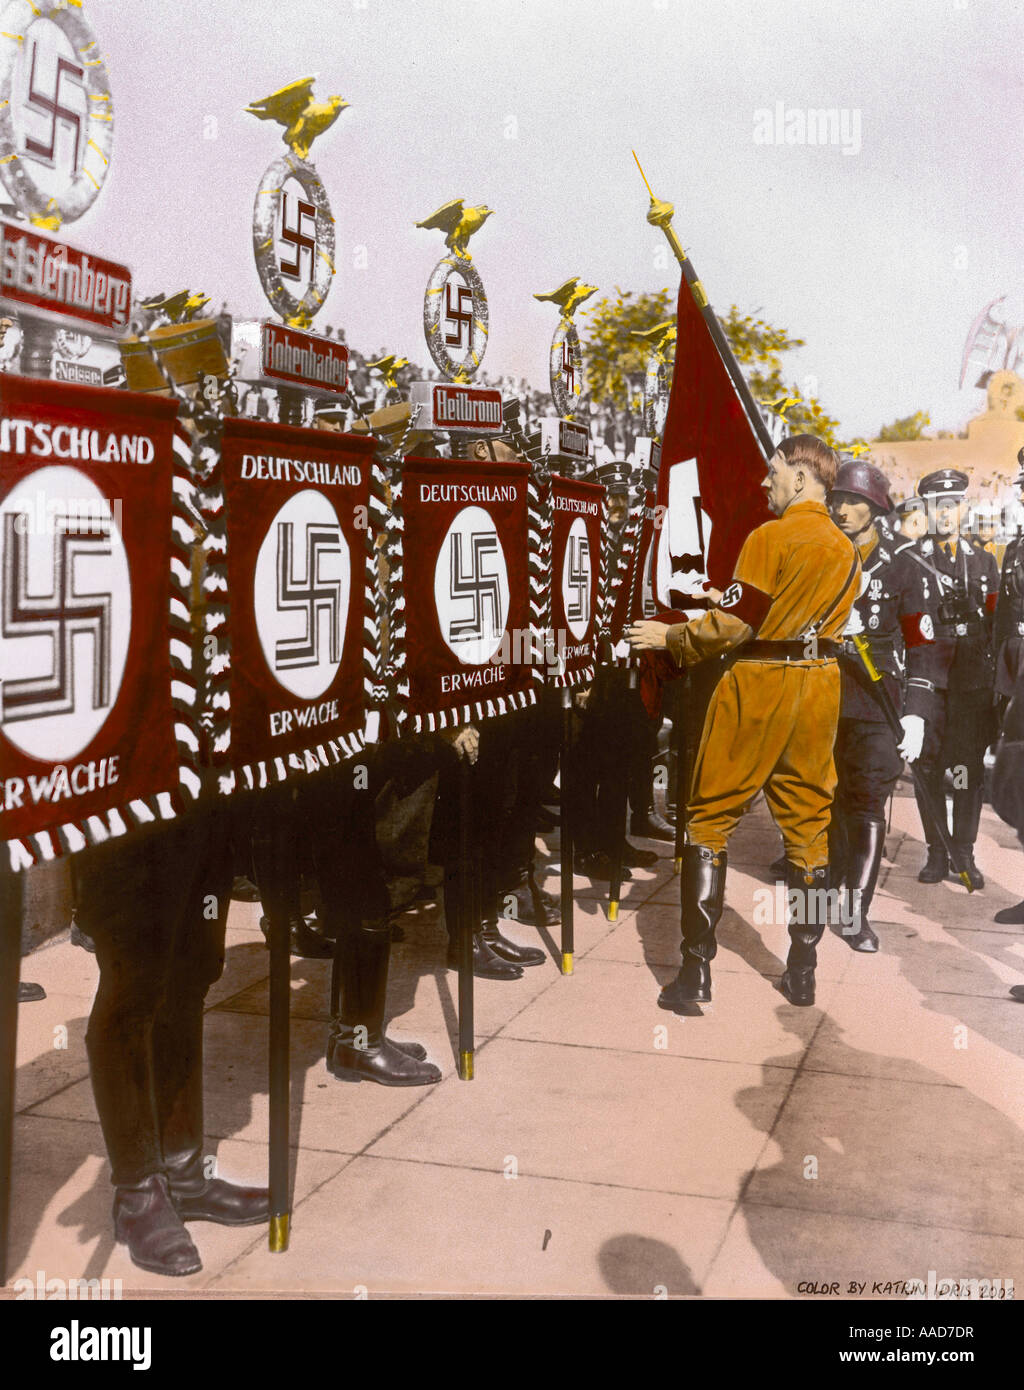 9 1934 9 4 A1 1 B D Reichsparteitag 1934 Standartenweihe 6 Reichsparteitag der NSDAP Triumph des Willens Nuernberg 4 bis 10 Sept Stock Photo